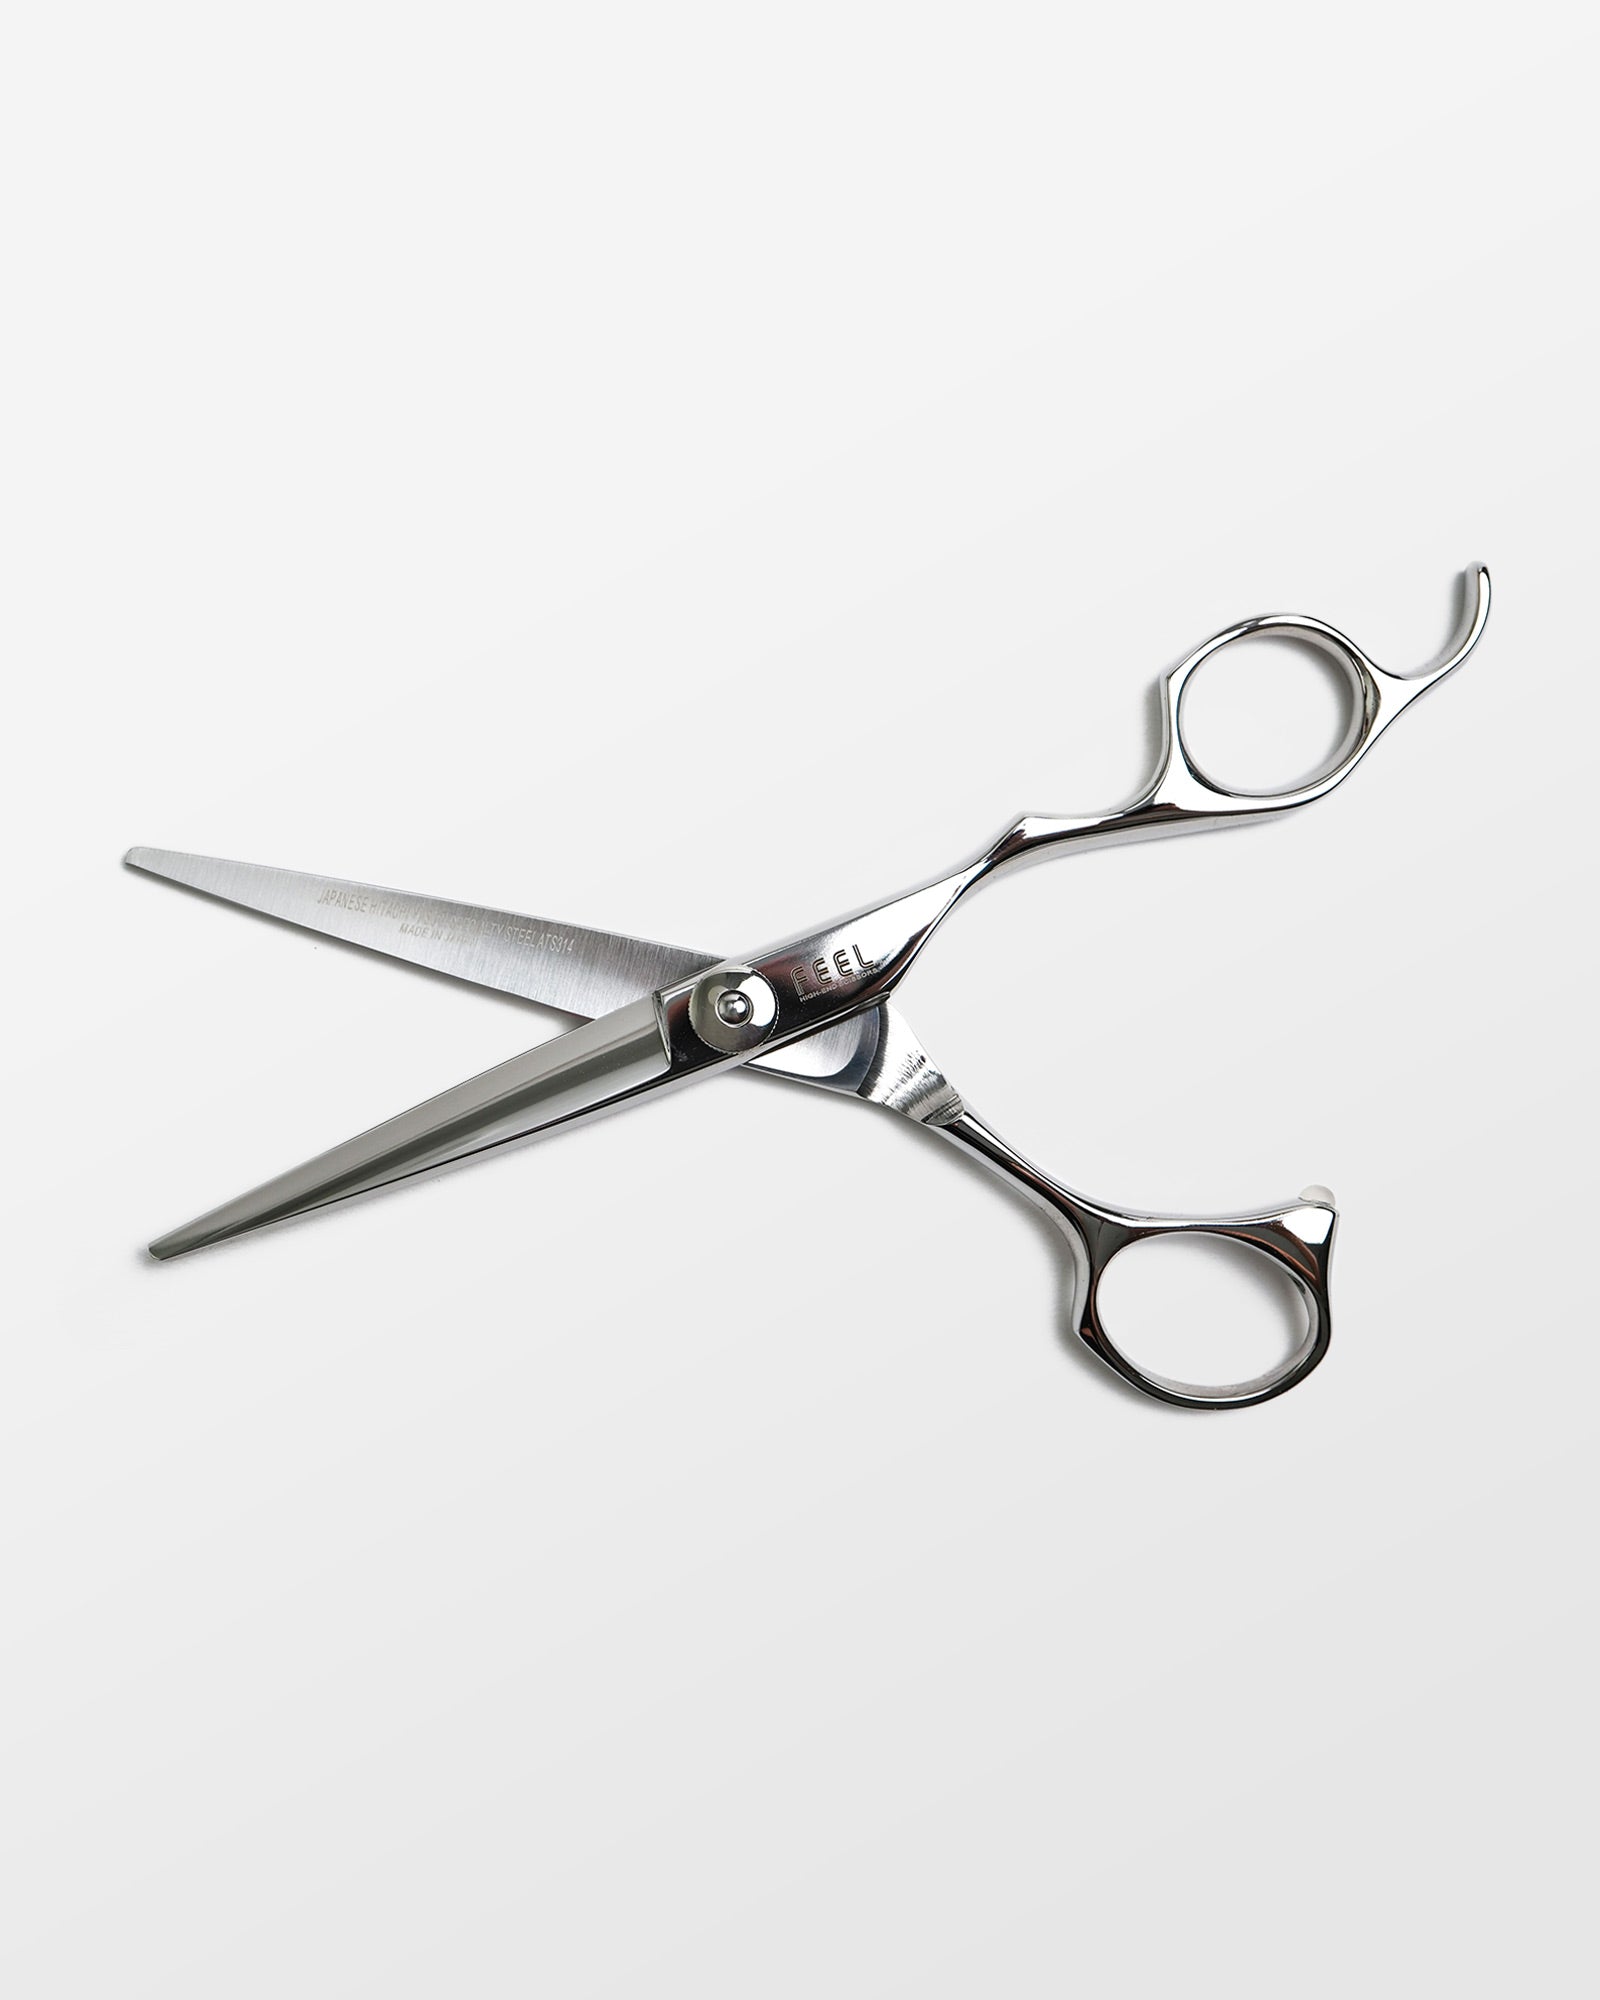 Feel Cutting Scissors